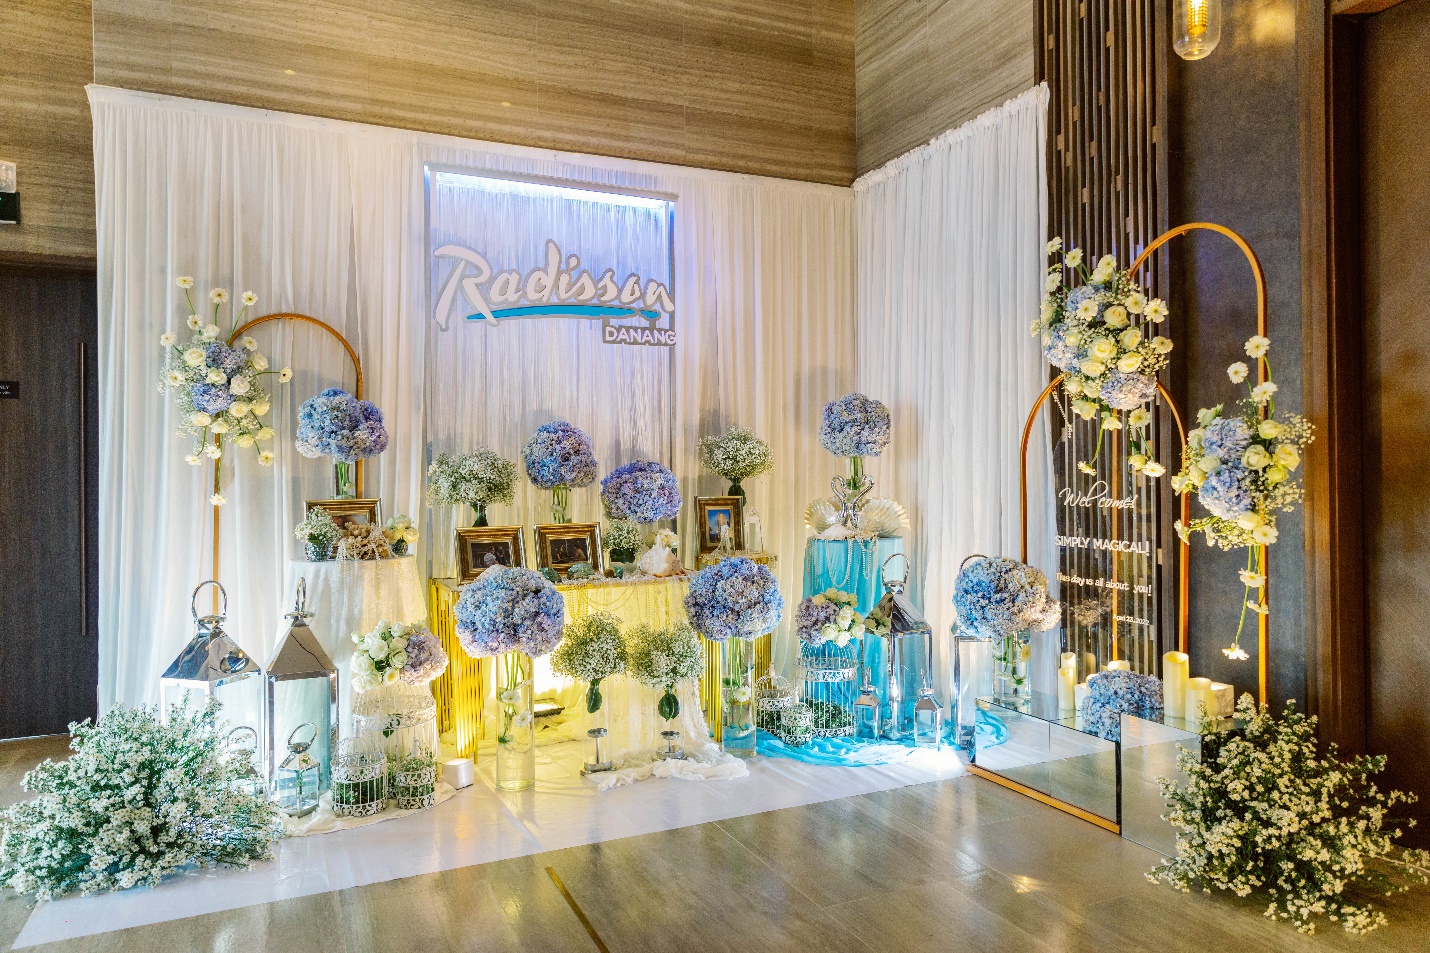 Khởi động mùa cưới với triển lãm đẹp như mơ “Simply Magical!” tại Radisson Hotel Danang - Ảnh 6.